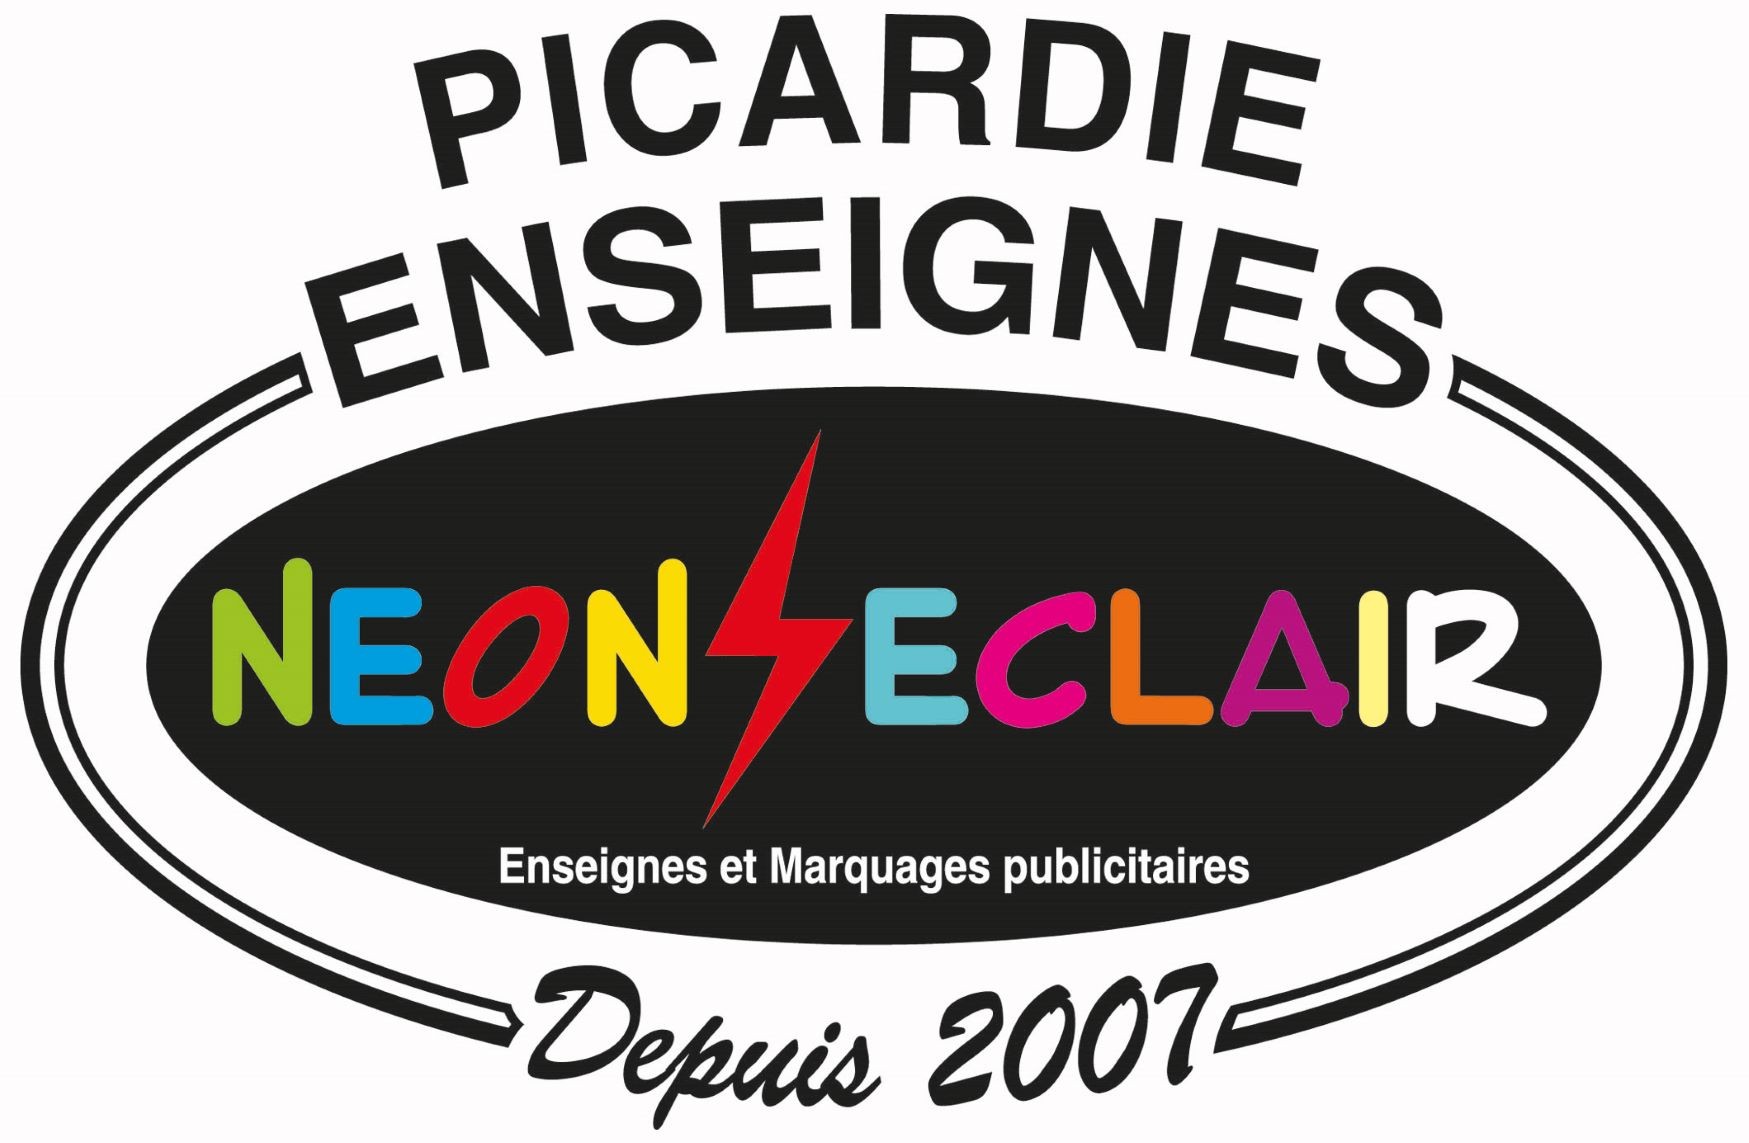 Picardie Enseigne Néon Éclair - Enseignes et marquages publicitaires Compiègne - Senlis - Beauvais